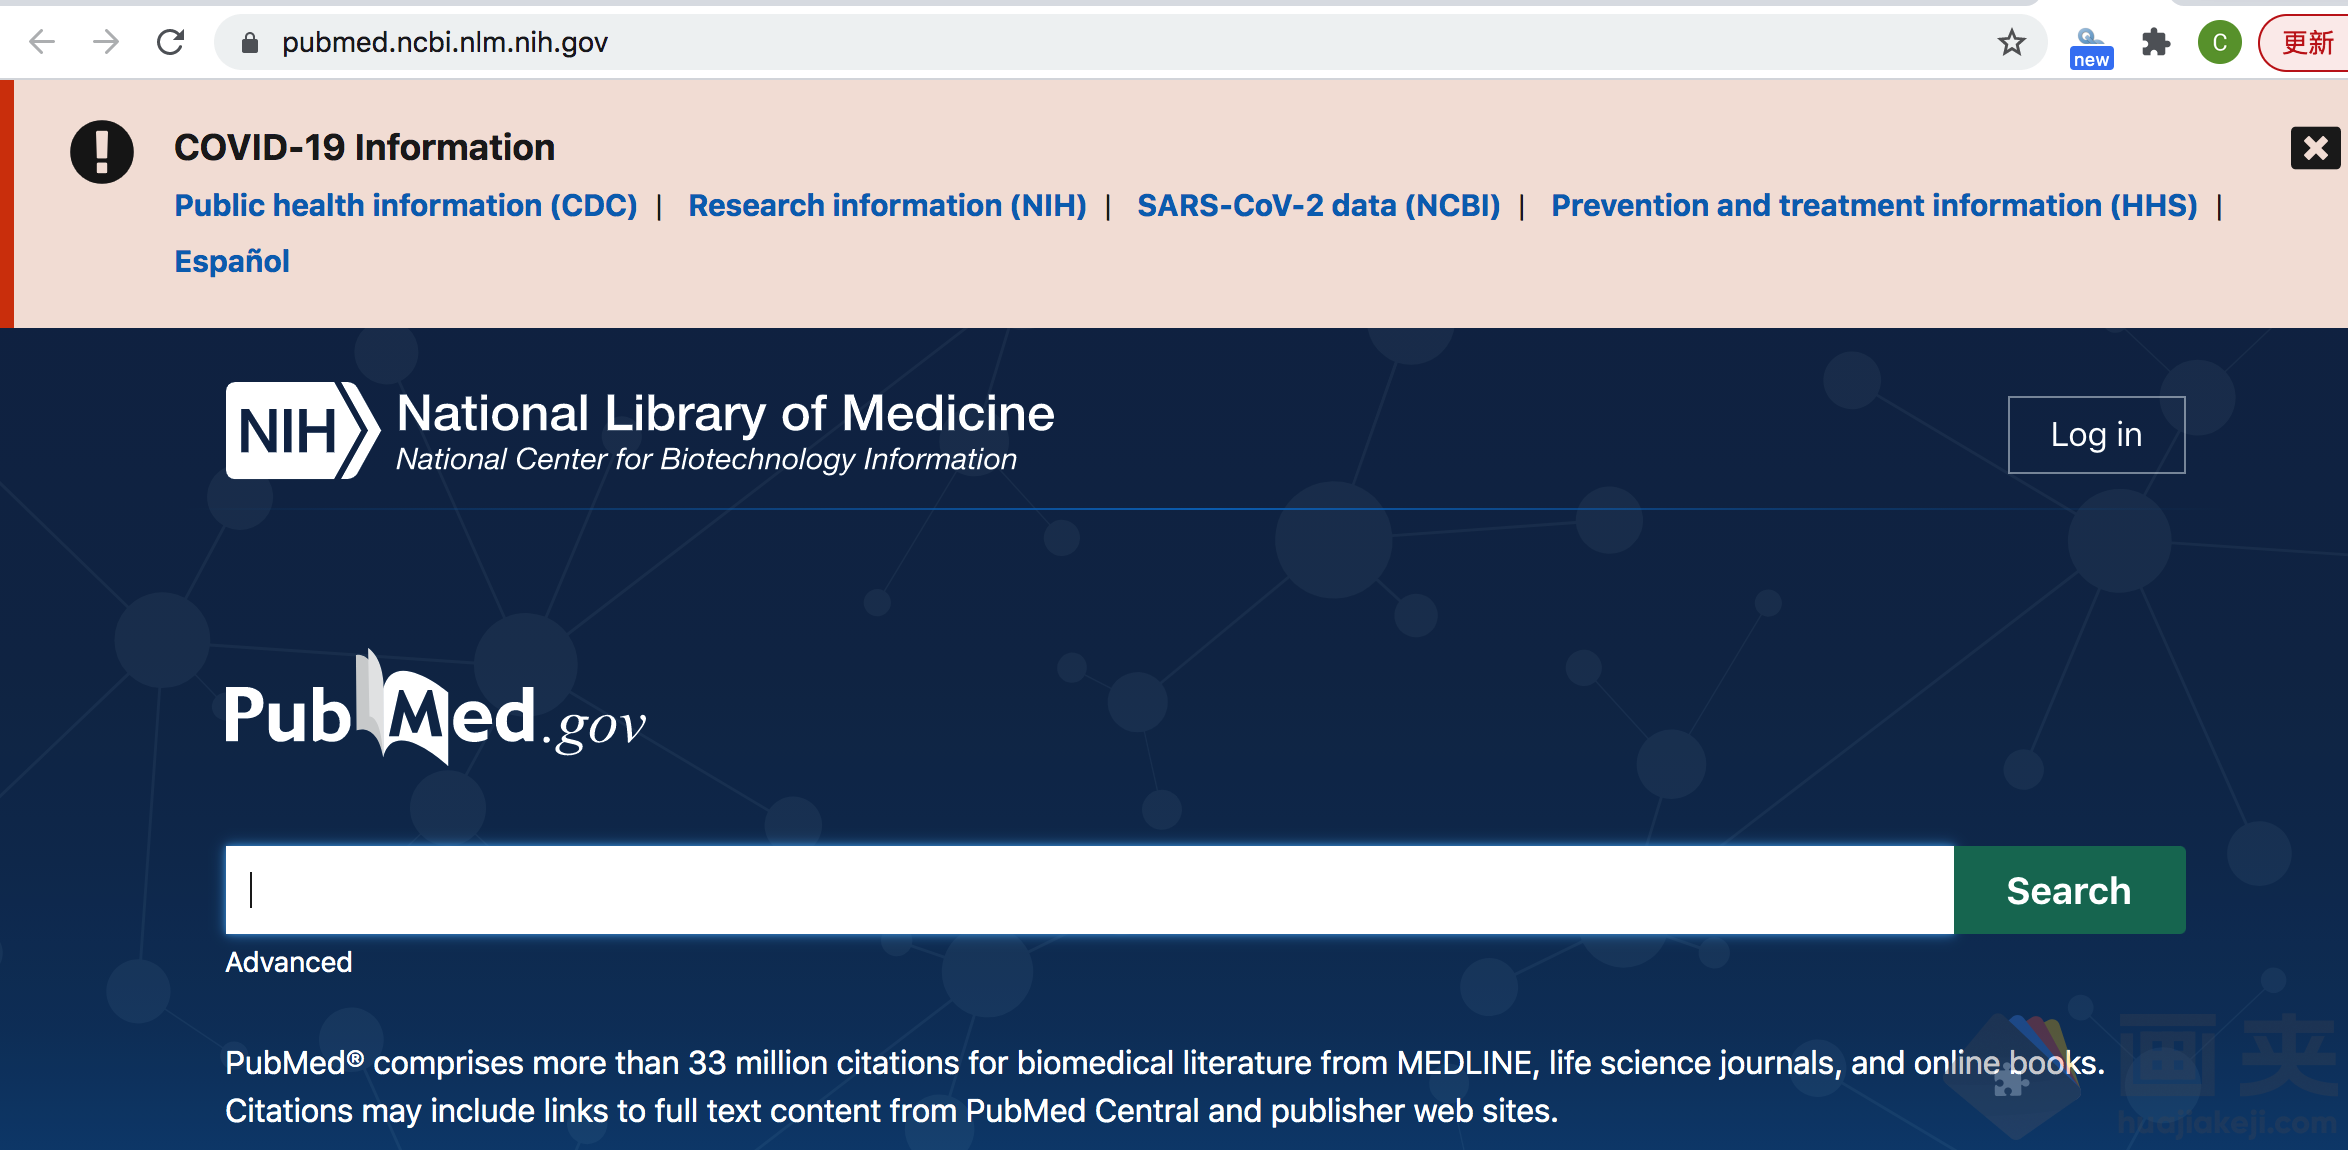 Scholarscope插件安装成功后自动跳转PubMed